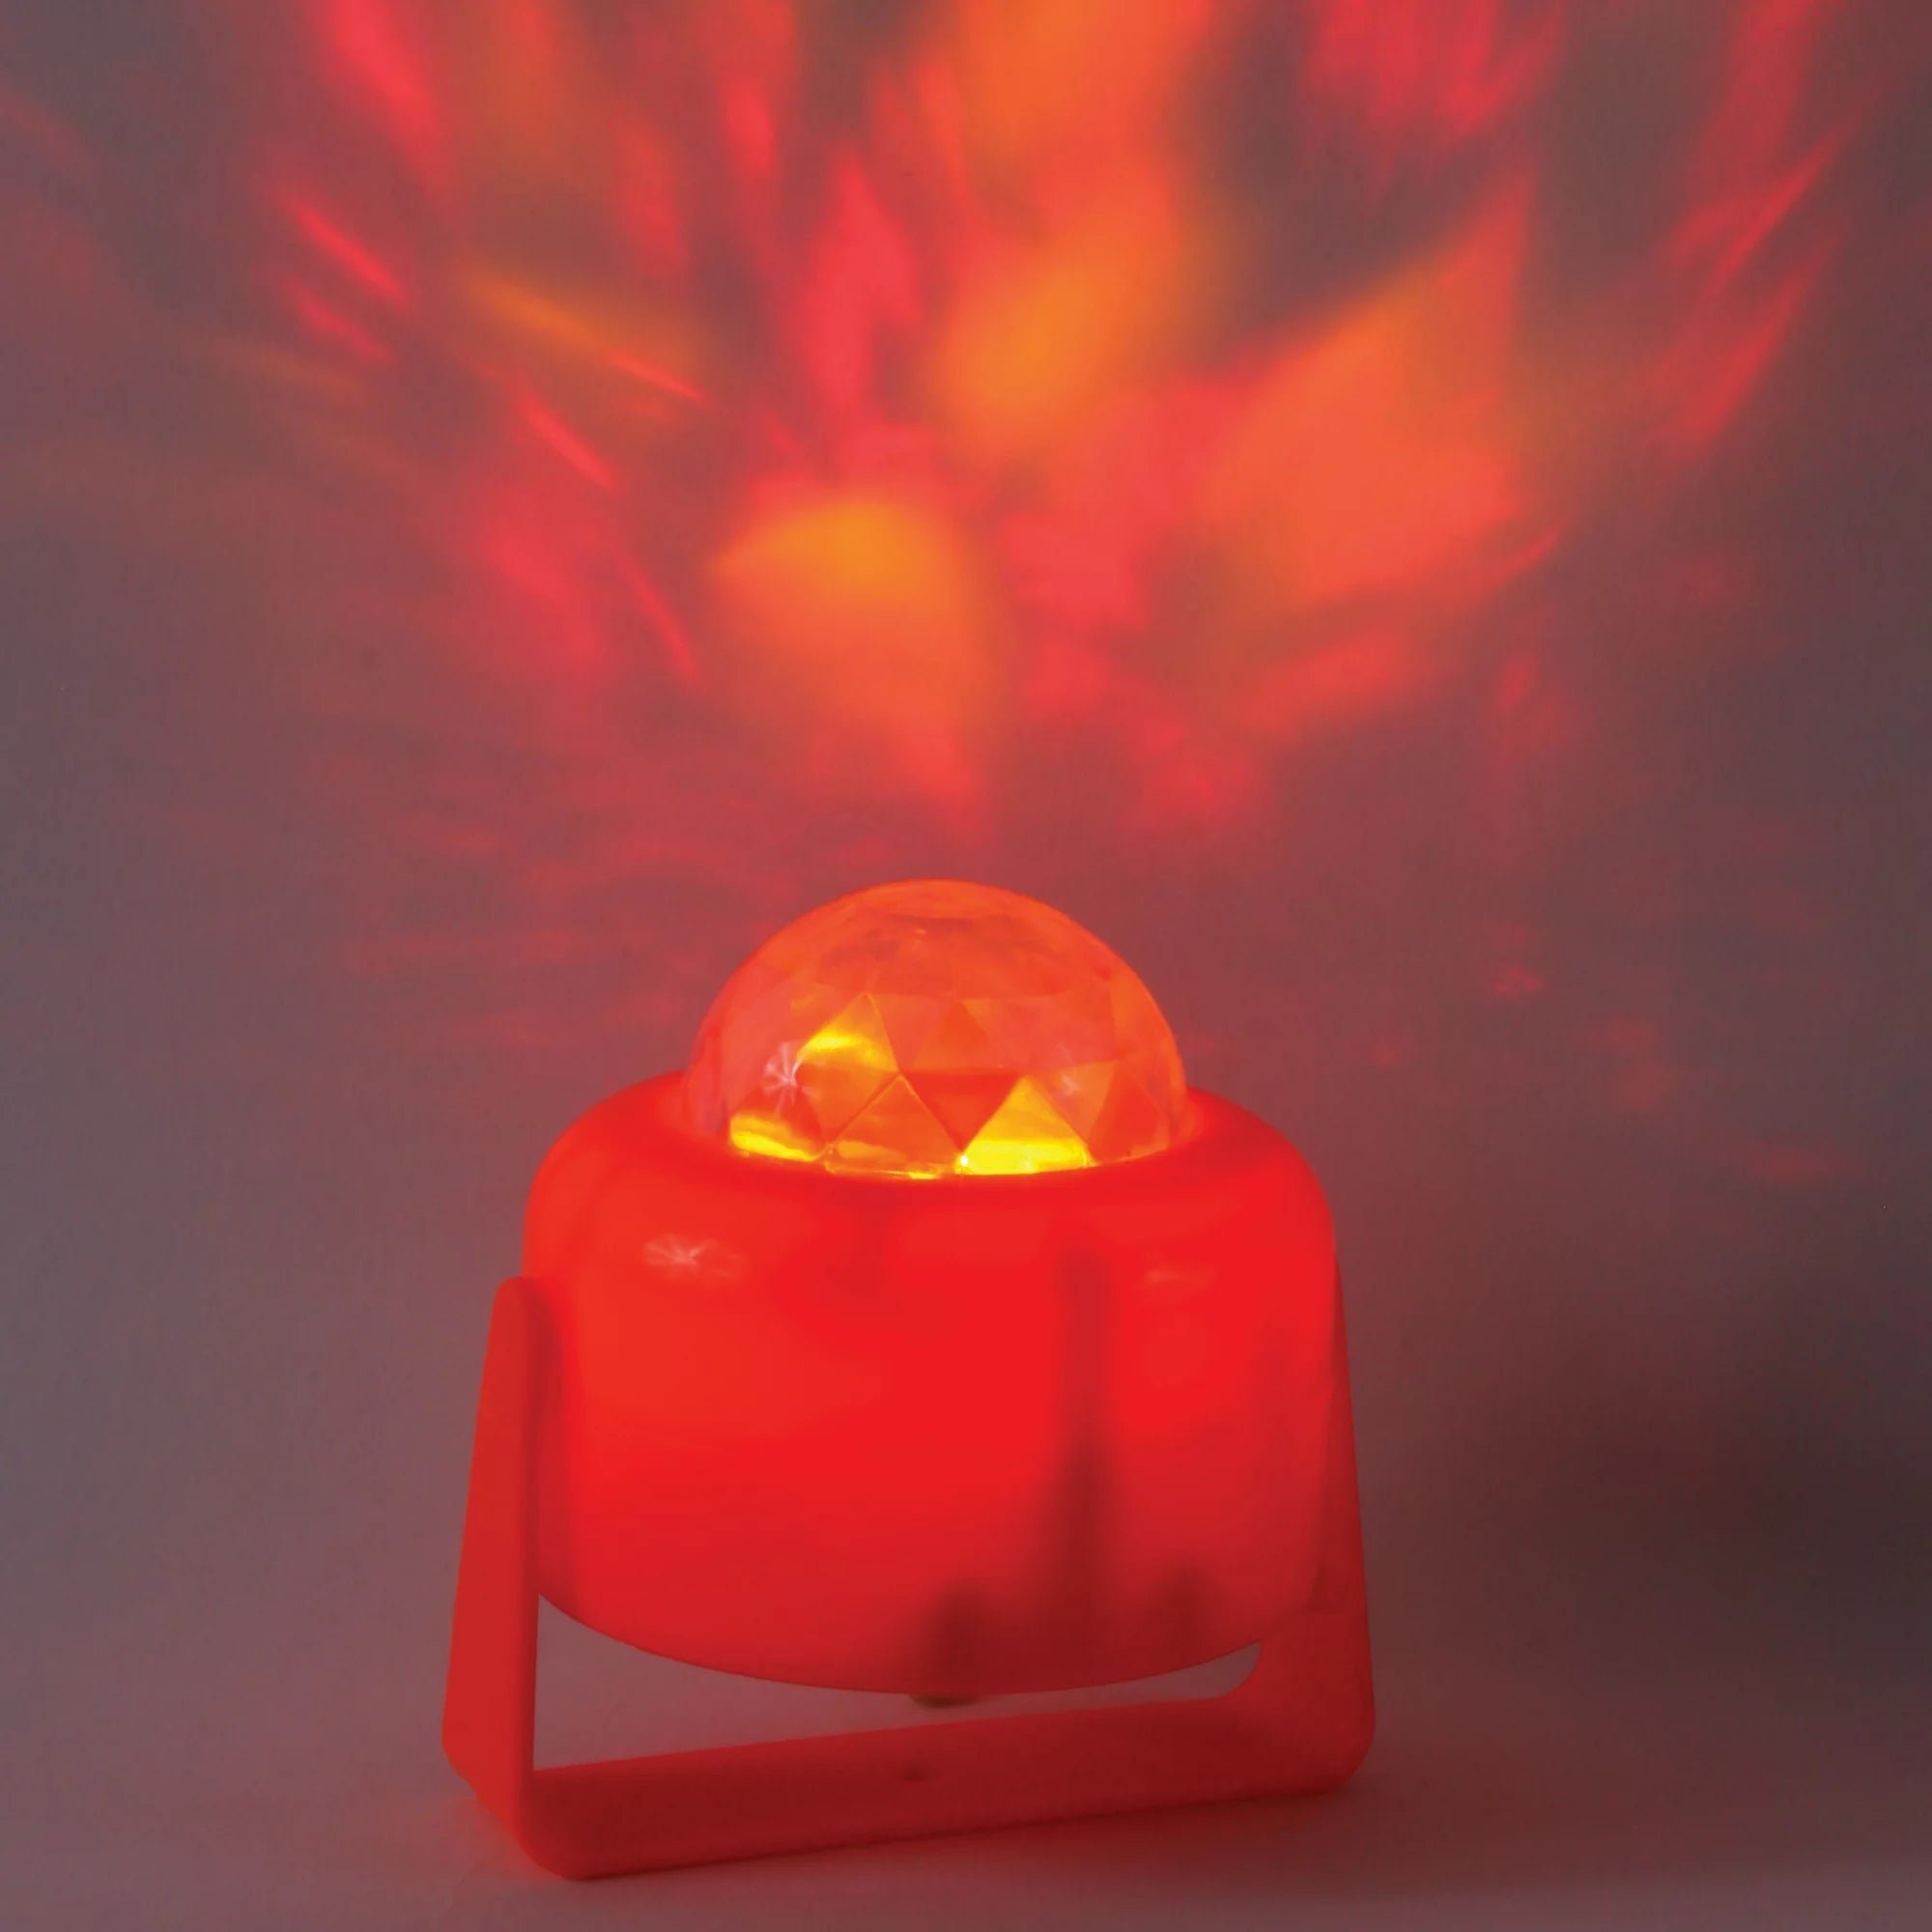 Flaming Pumpkin Light – Light Up Your Pumpkin with Amazing Effect